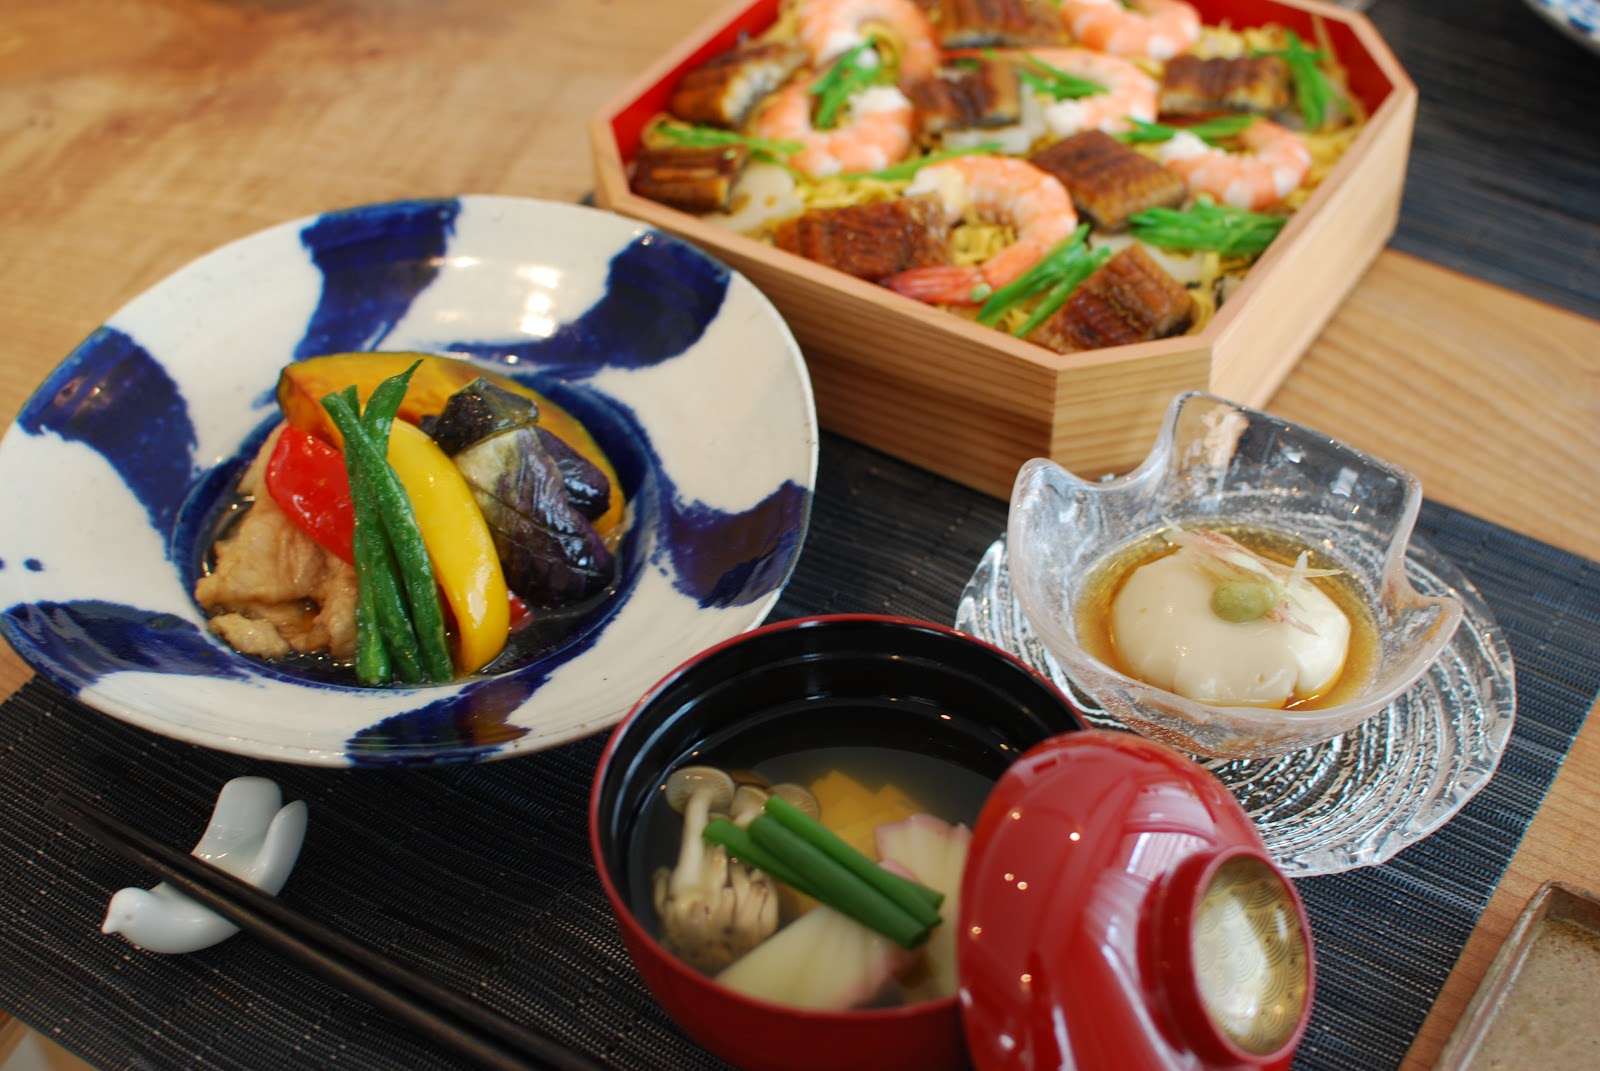 Cooking Room 401 プライベートレッスン専門の料理教室 クッキングルーム401 渋谷 初夏のおもてなし 和食